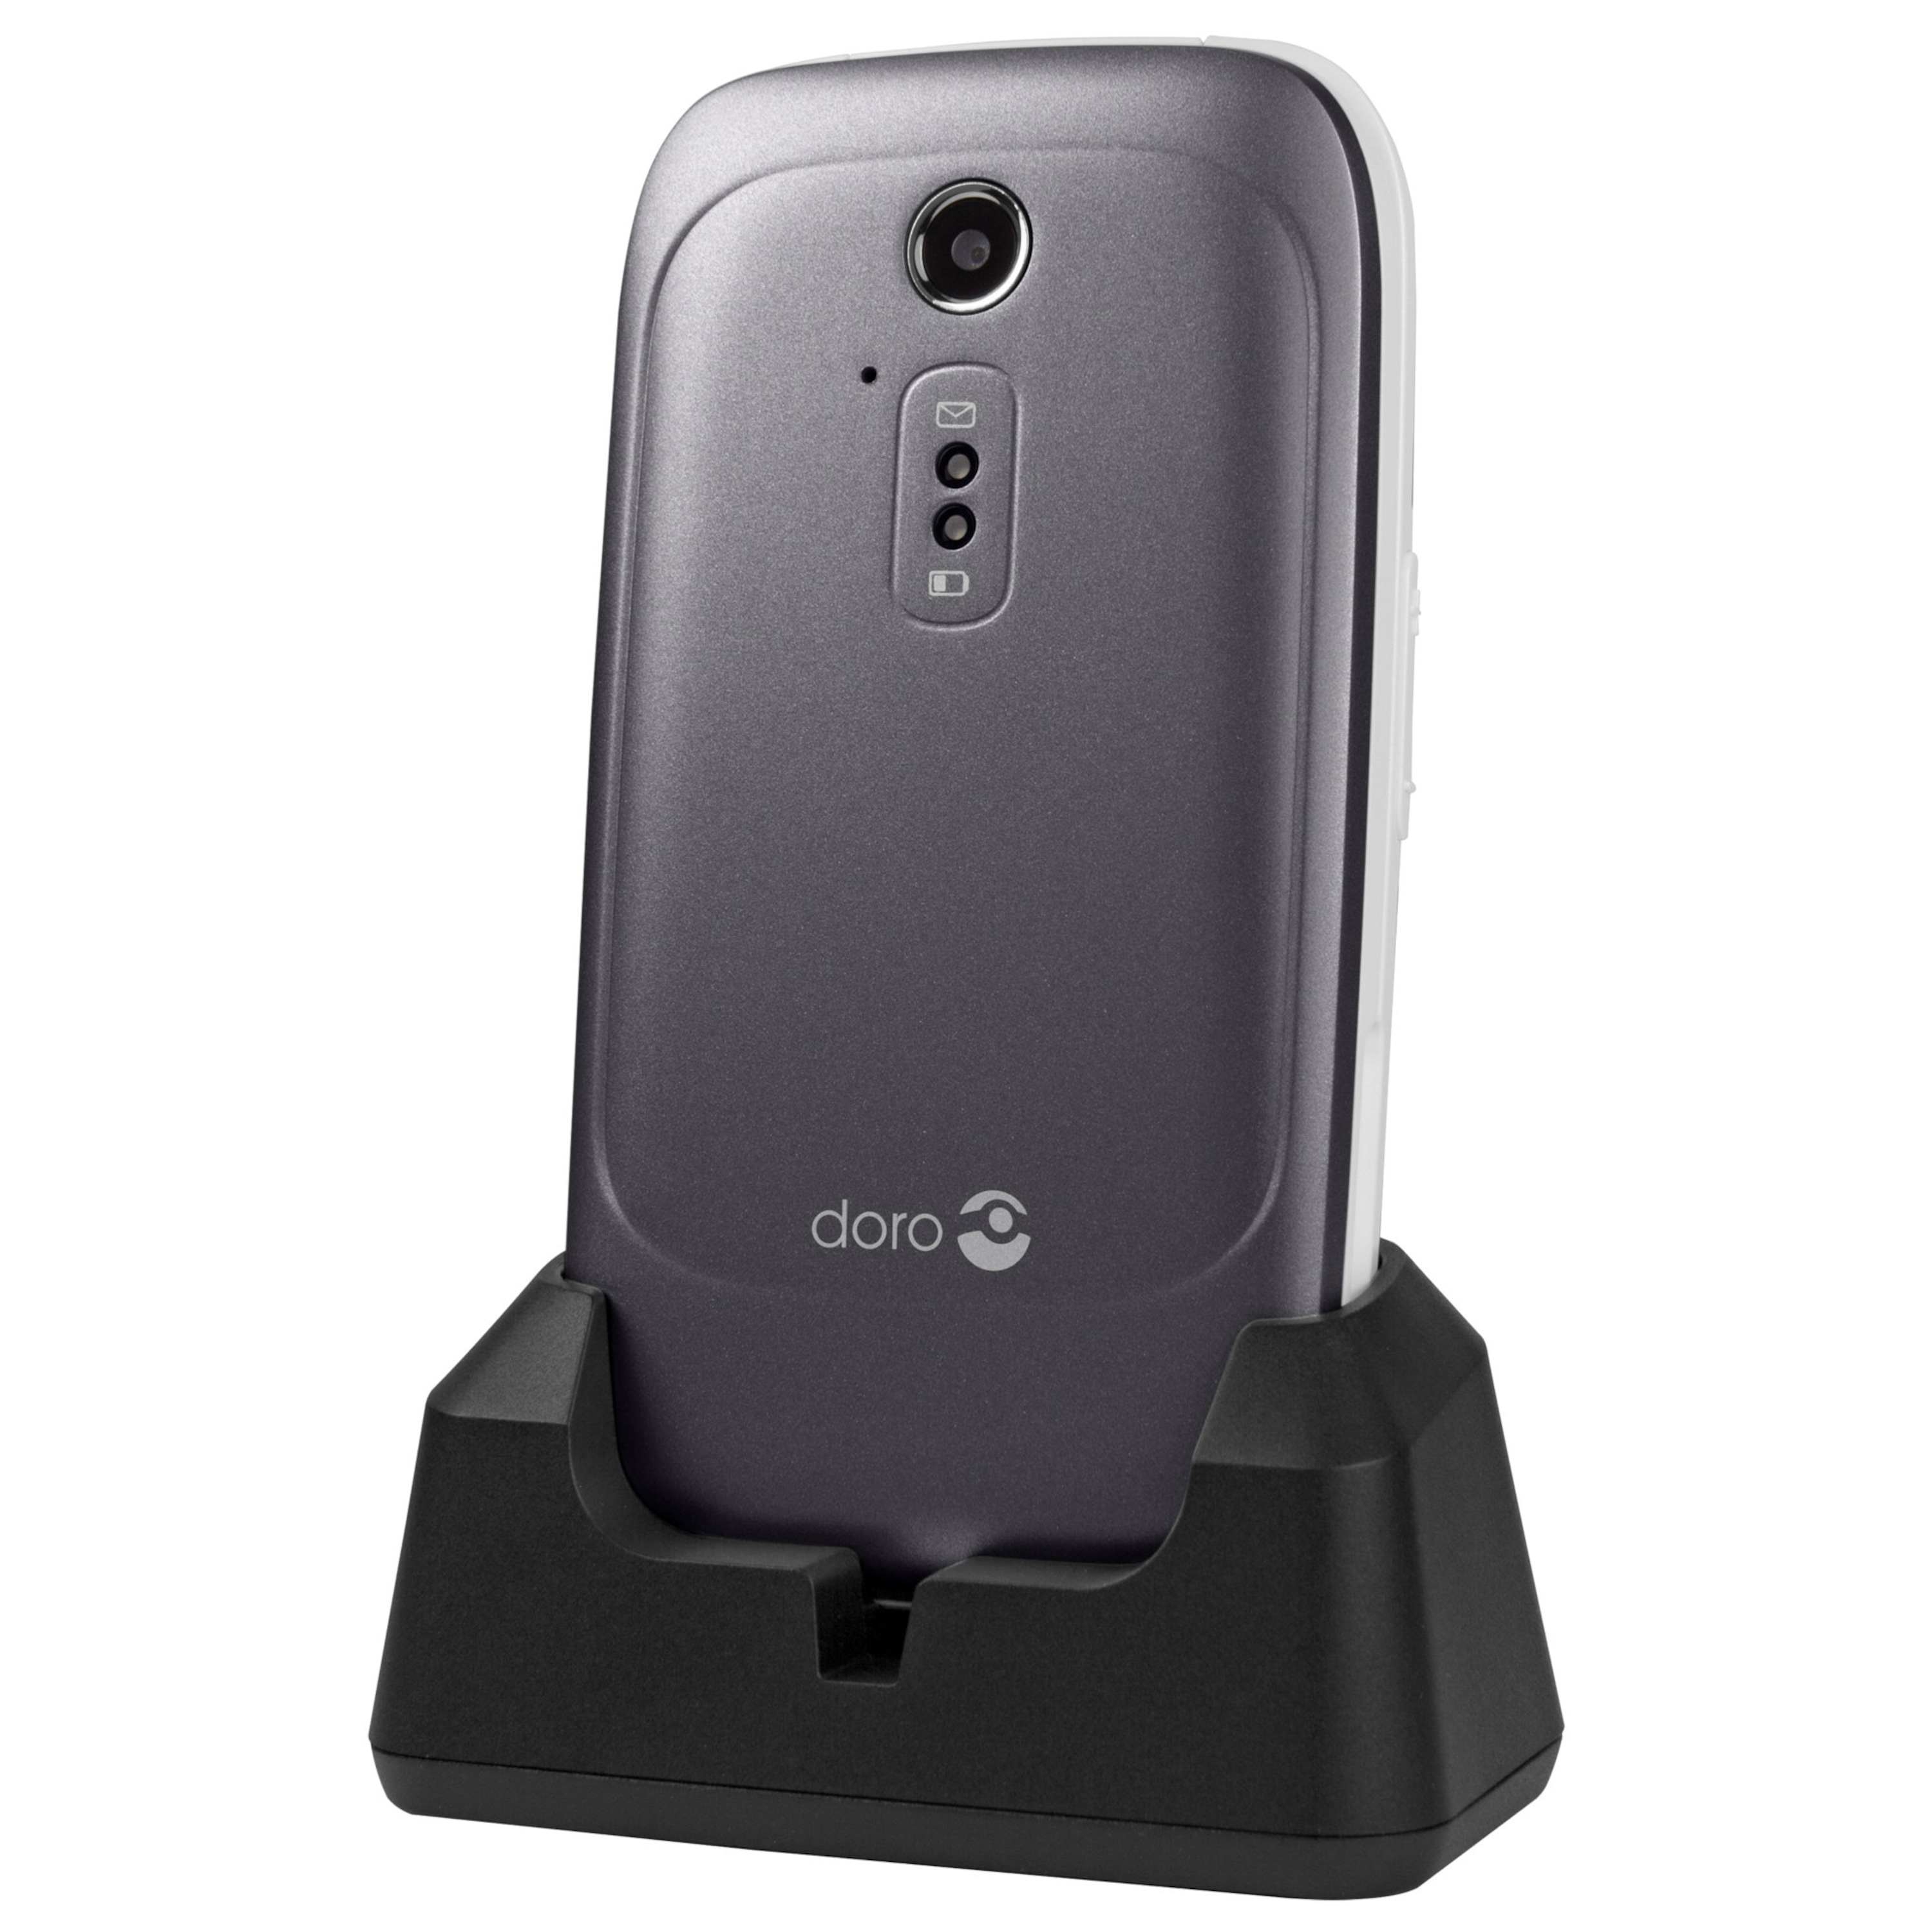 DORO 6520 Mobiltelefon, 7,11 cm (2,8'') Farbdisplay, Telefonbuch mit 500 Speicherplätzen, Bluetooth 2.1, 2 MP Kamera  (B-Ware)